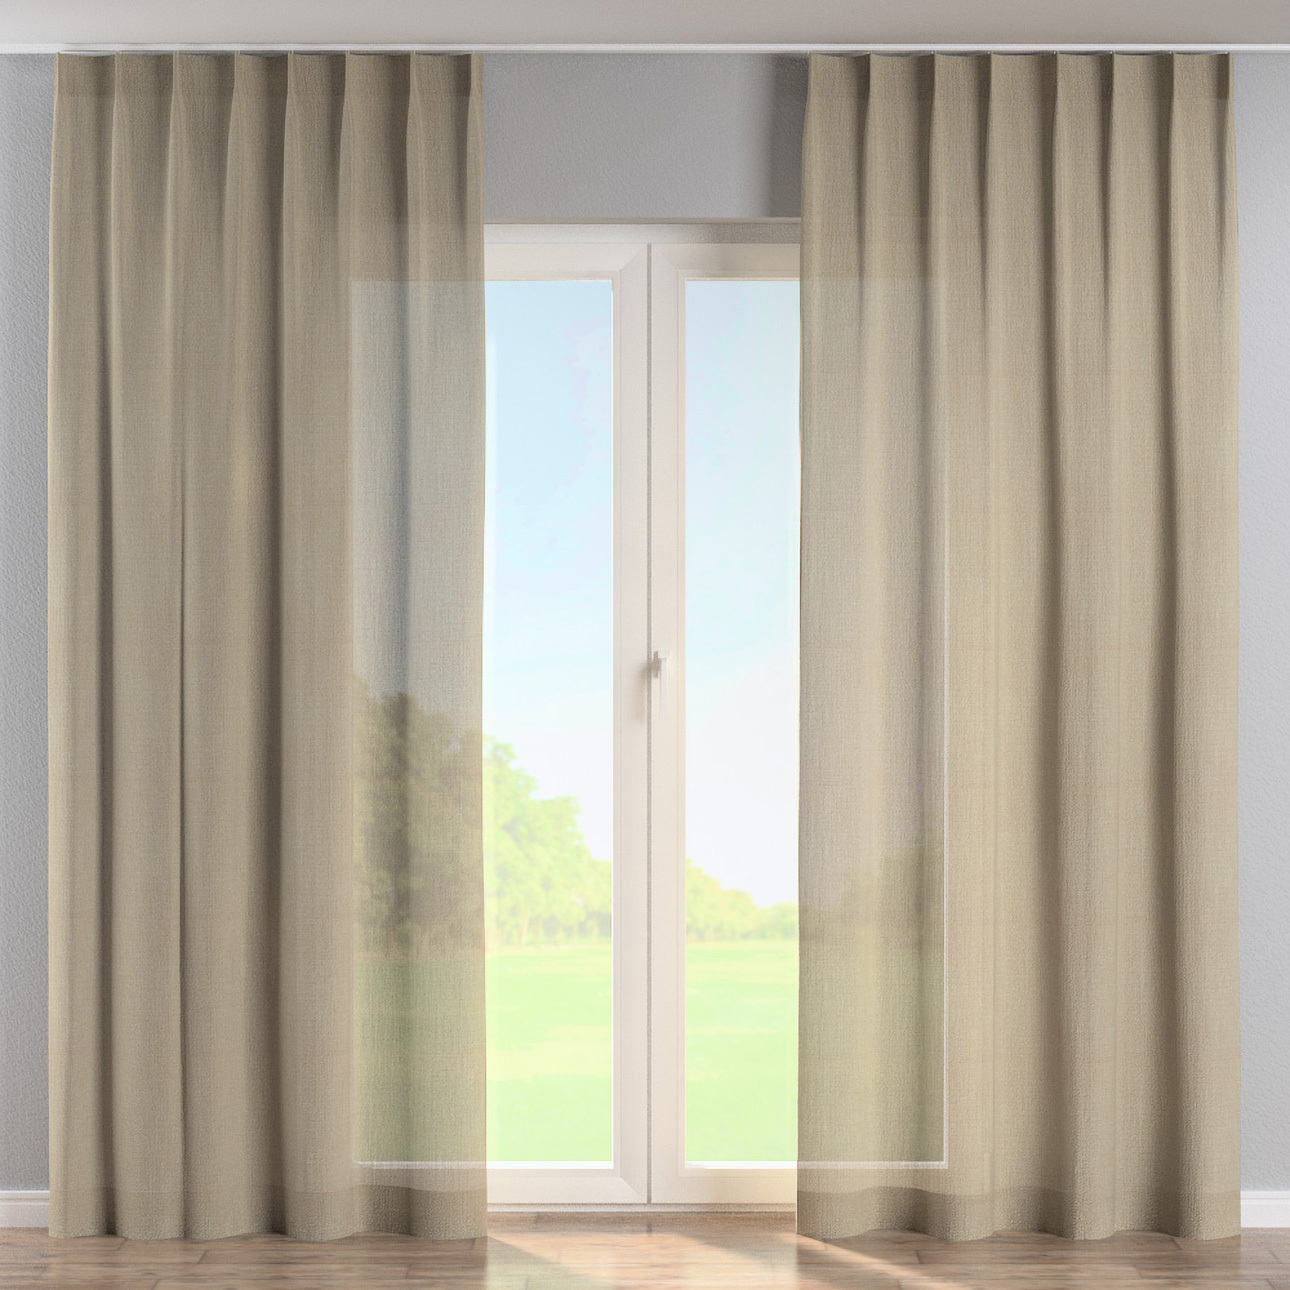 Vorhang mit flämischen 1-er Falten, dunkelbeige, Alara Premium (145-01) günstig online kaufen